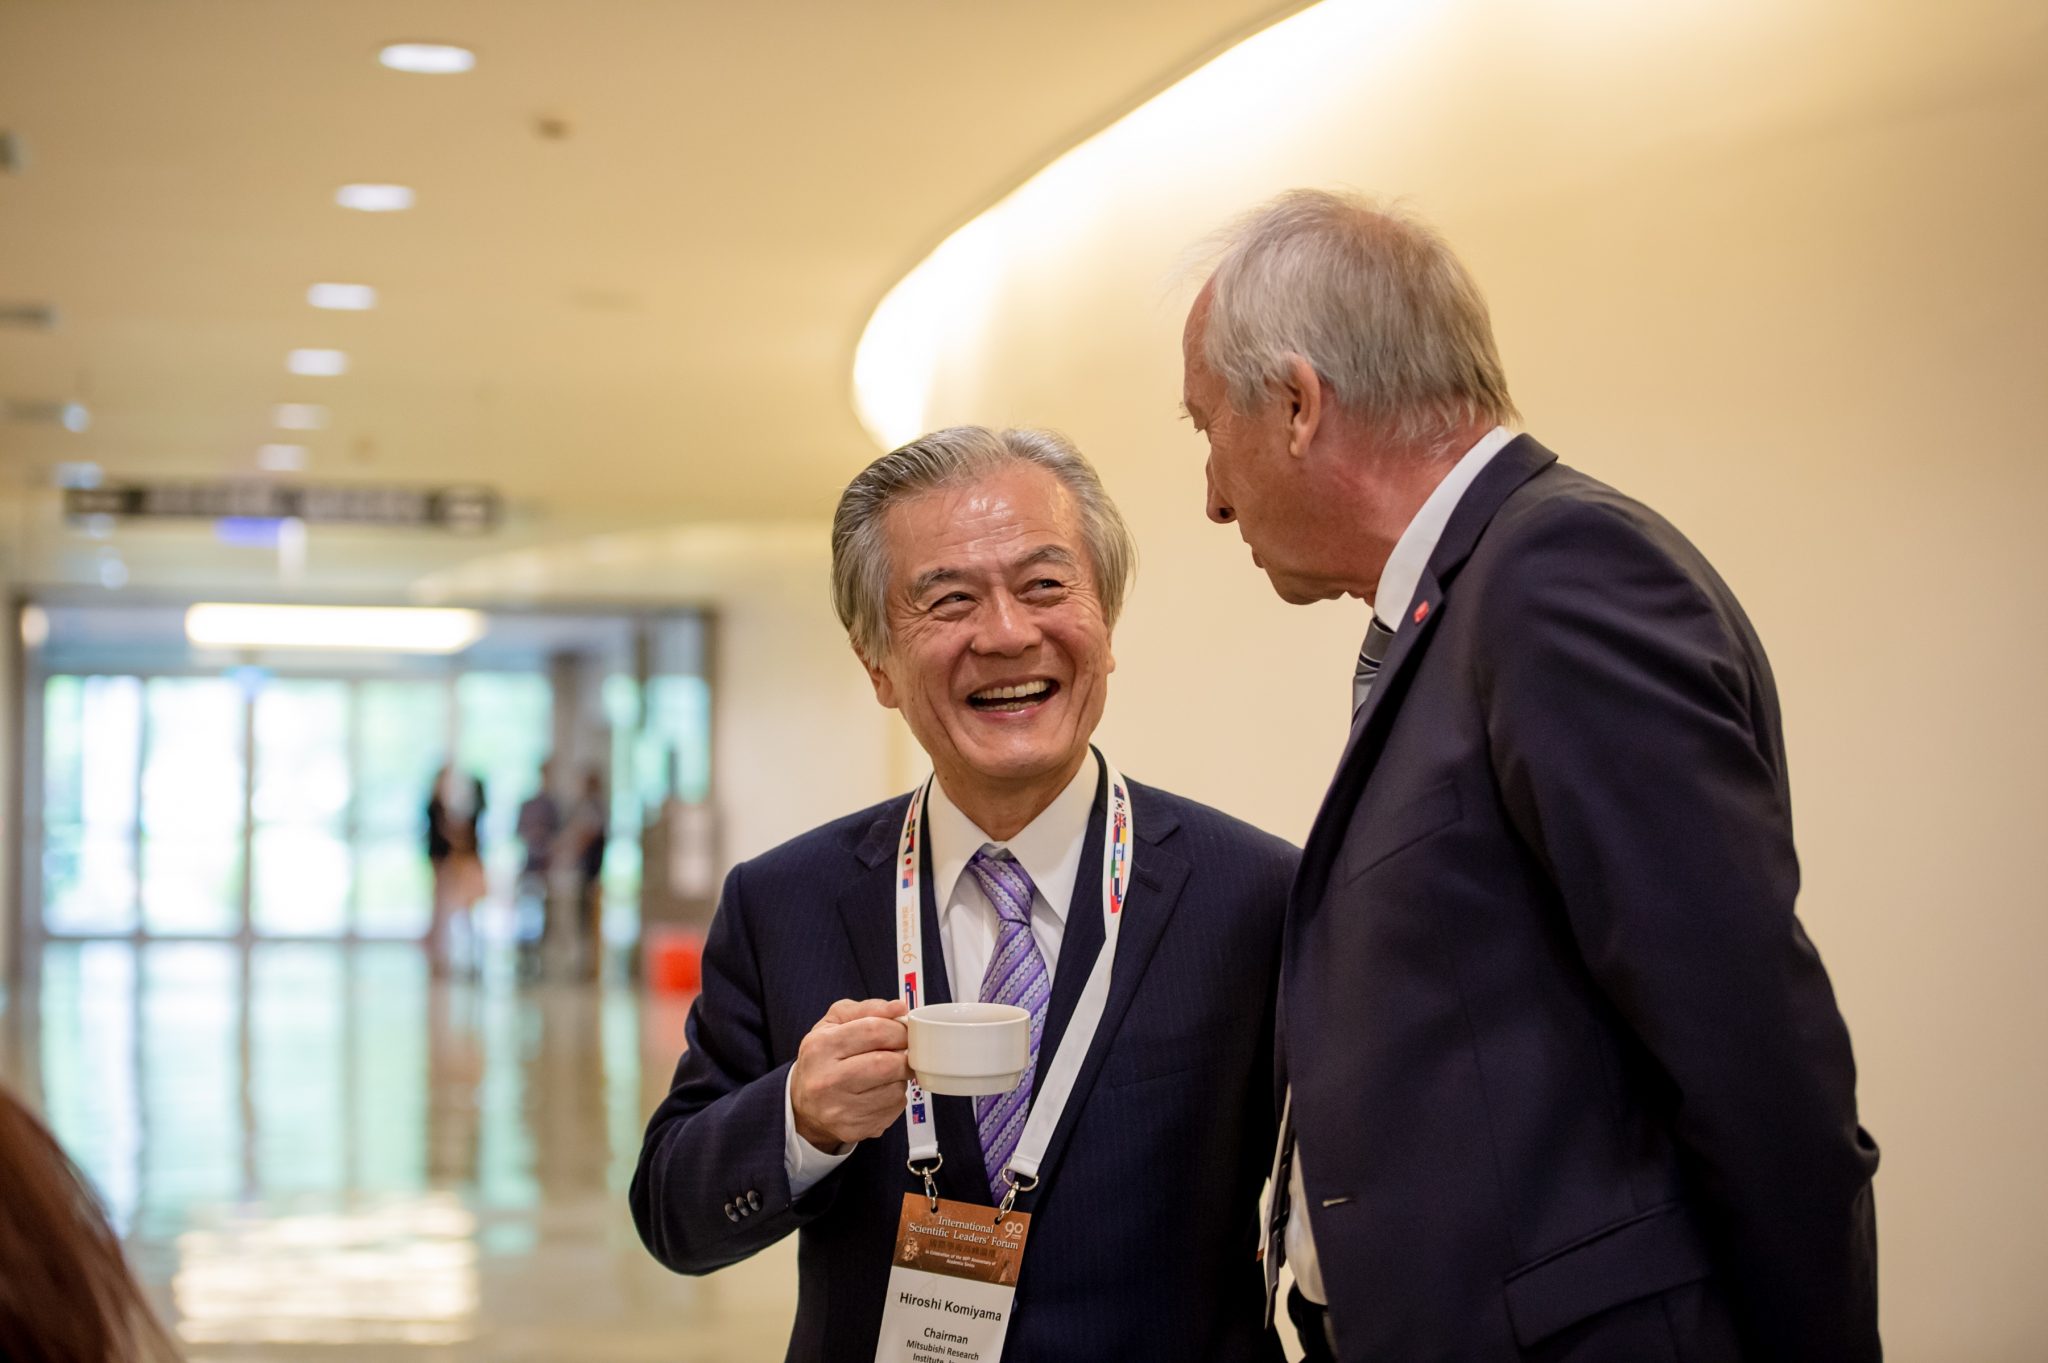 40 國際學術高峰論壇現場 三菱綜合研究所主席 Dr. Hiroshi Komiyama.